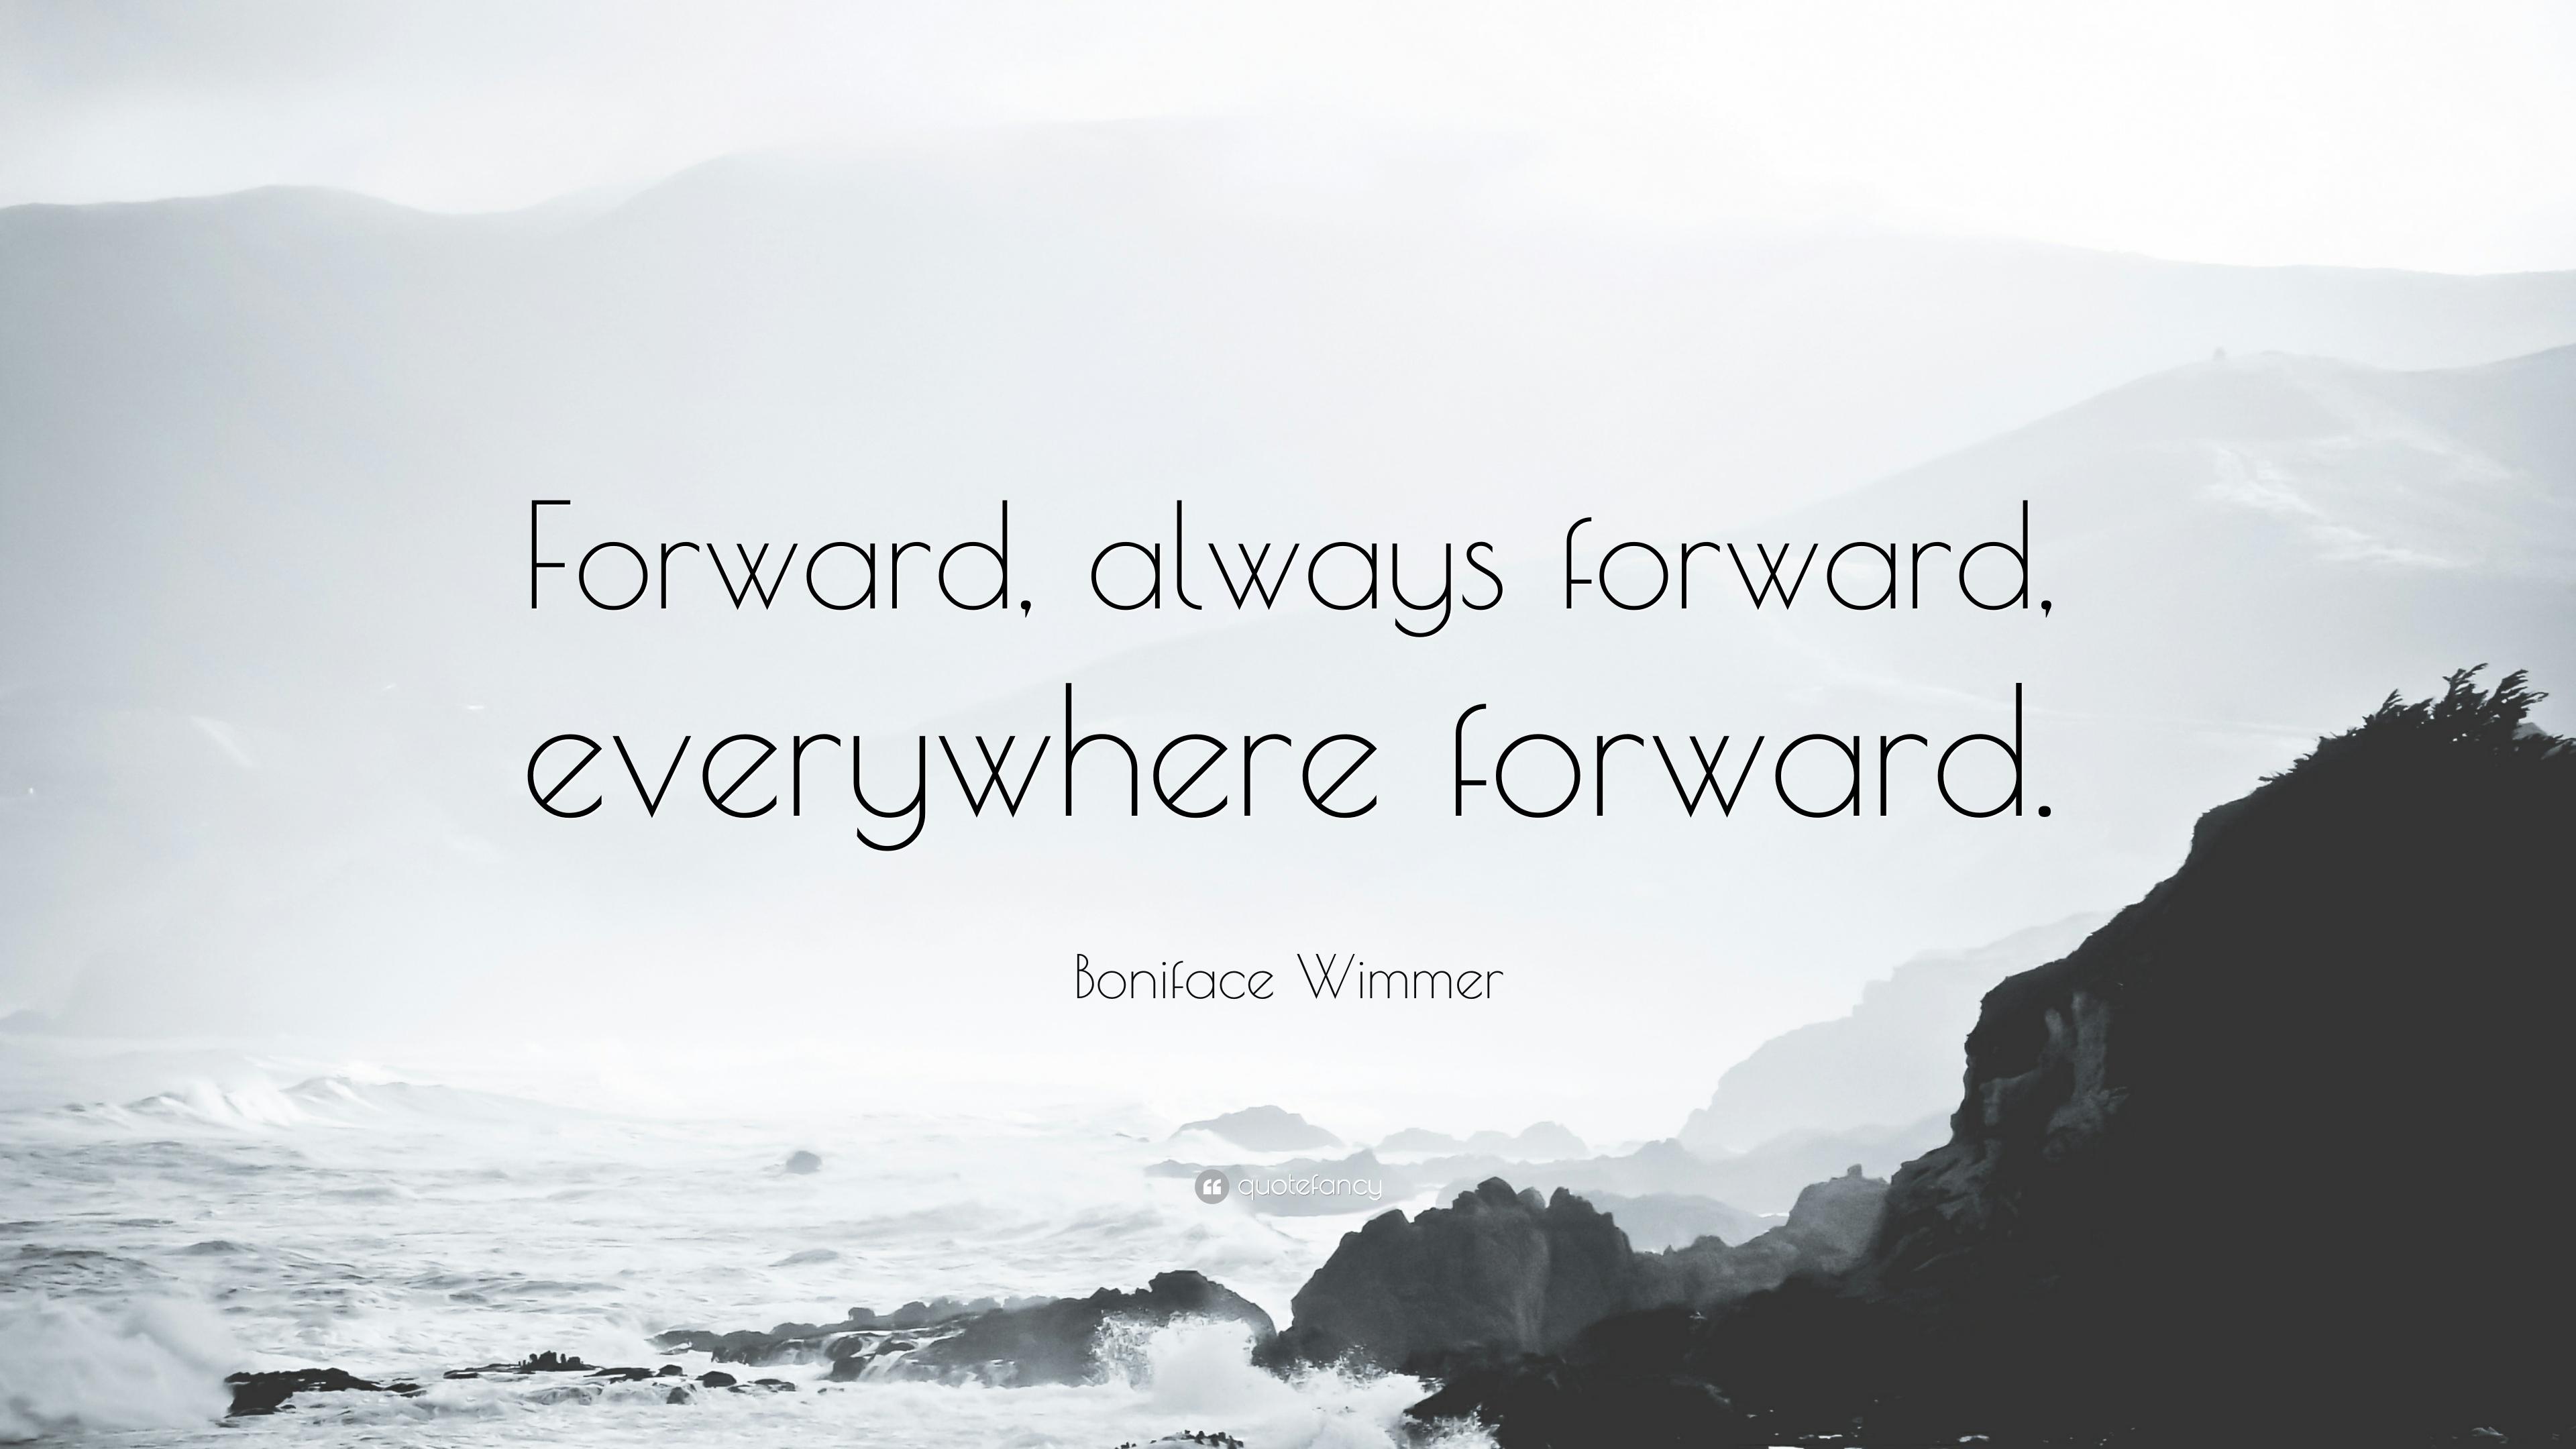 Boniface Wimmer Quote: “Forward, always forward, everywhere forward